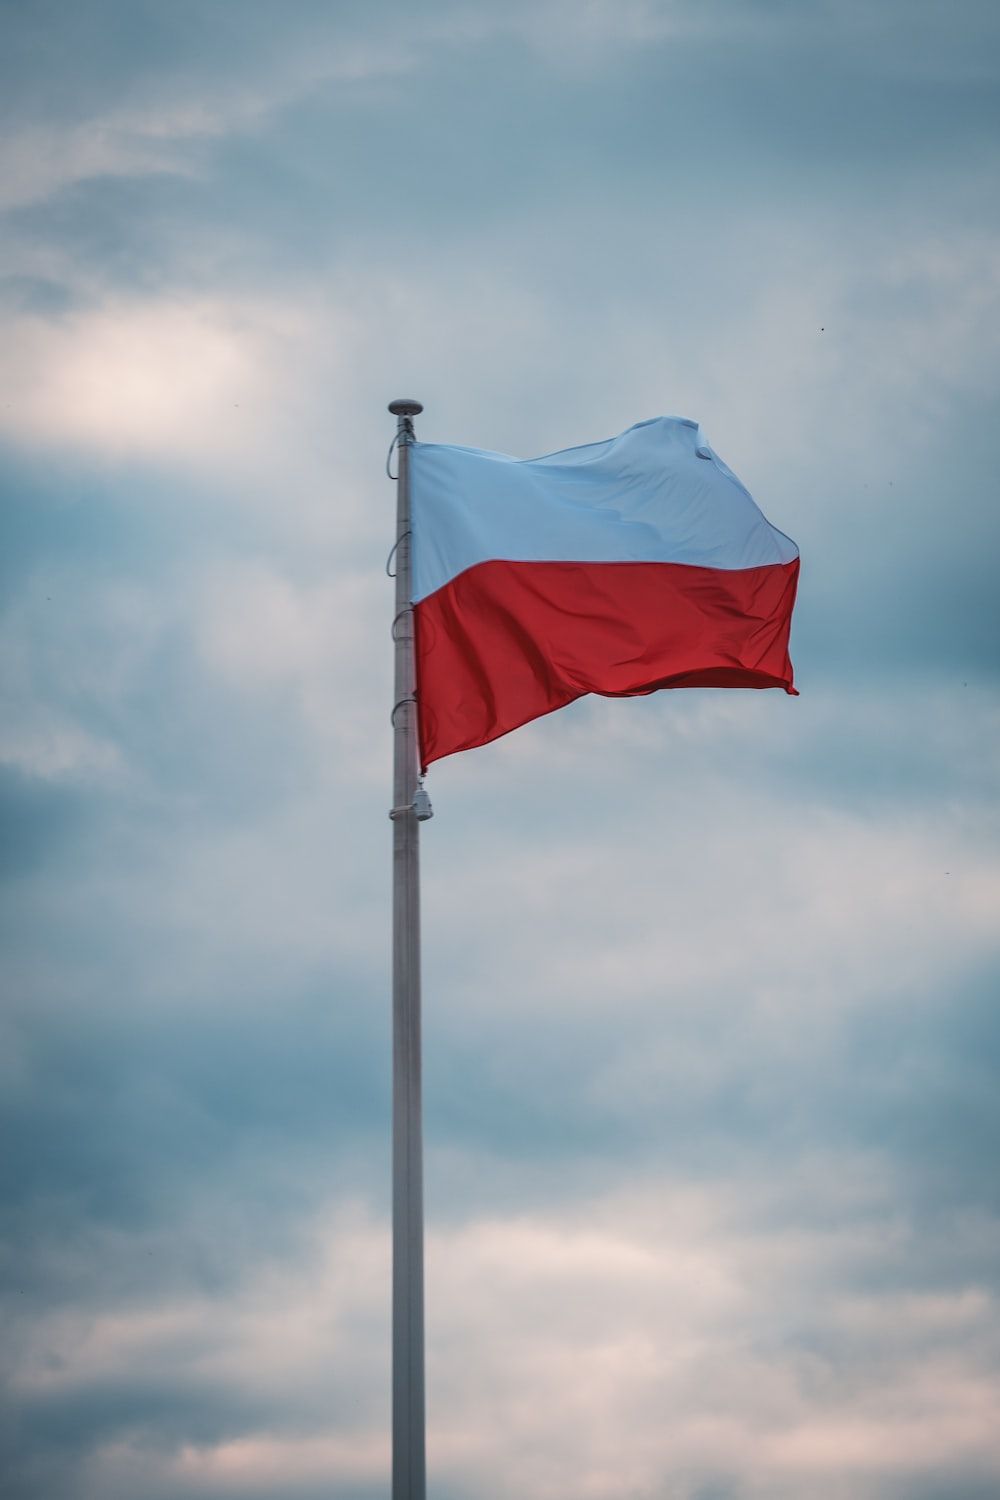  Polen Hintergrundbild 1000x1500. Foto Zum Thema Blau Weiße Flagge Unter Weißen Wolken